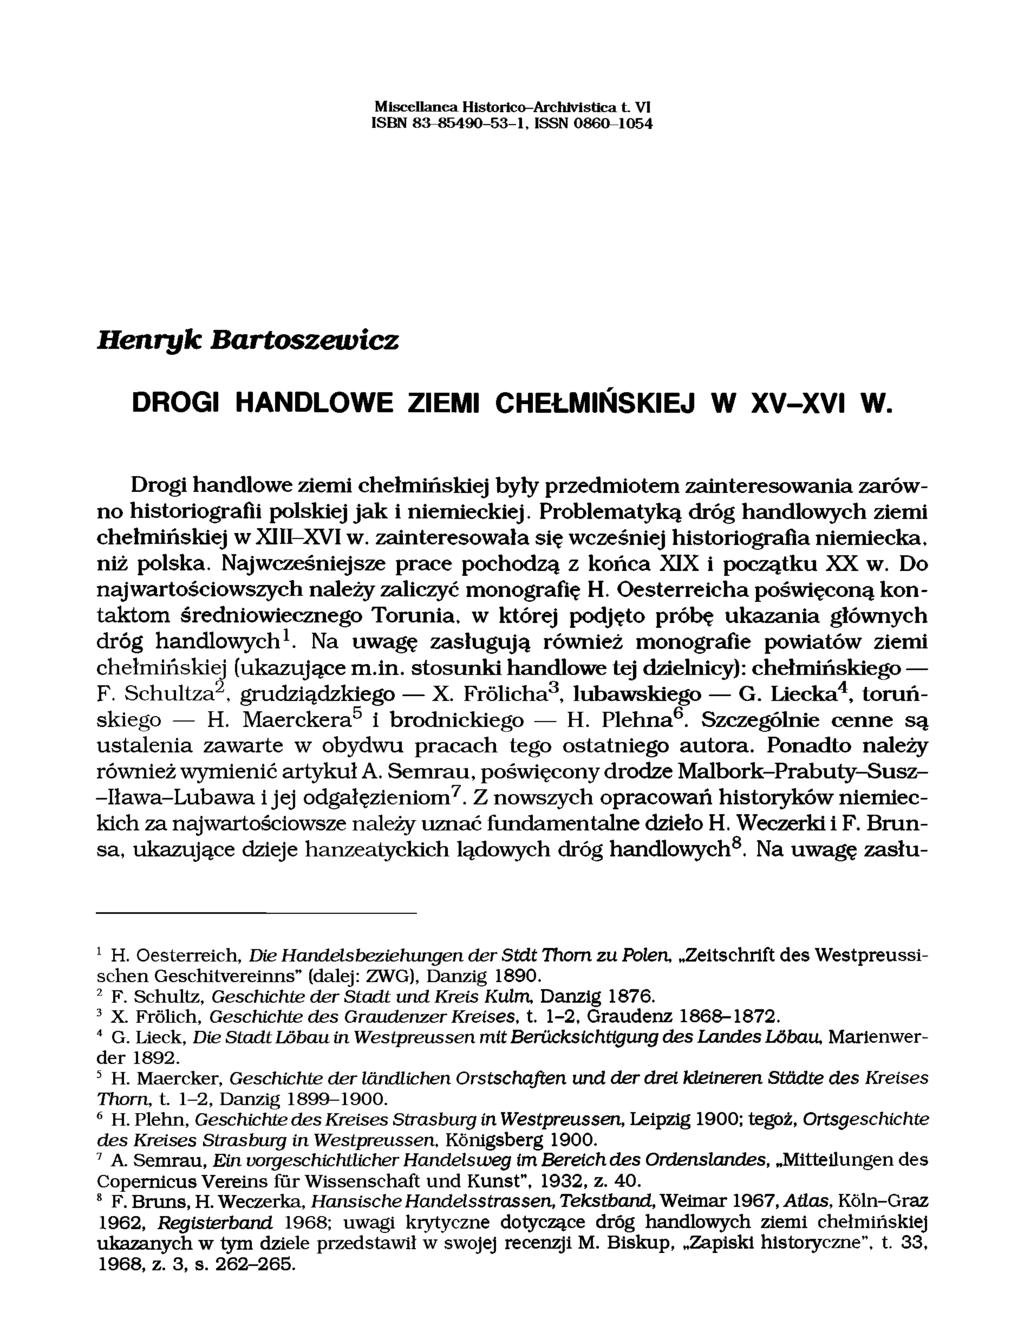 M iscellanea H istorico-arch lvistica L V I ISBN 83-85490 -53-1, ISSN 0860-1054 Henryk Bartoszewicz DROGI HANDLOWE ZIEMI CHEŁMIŃSKIEJ W XV-XVI W.